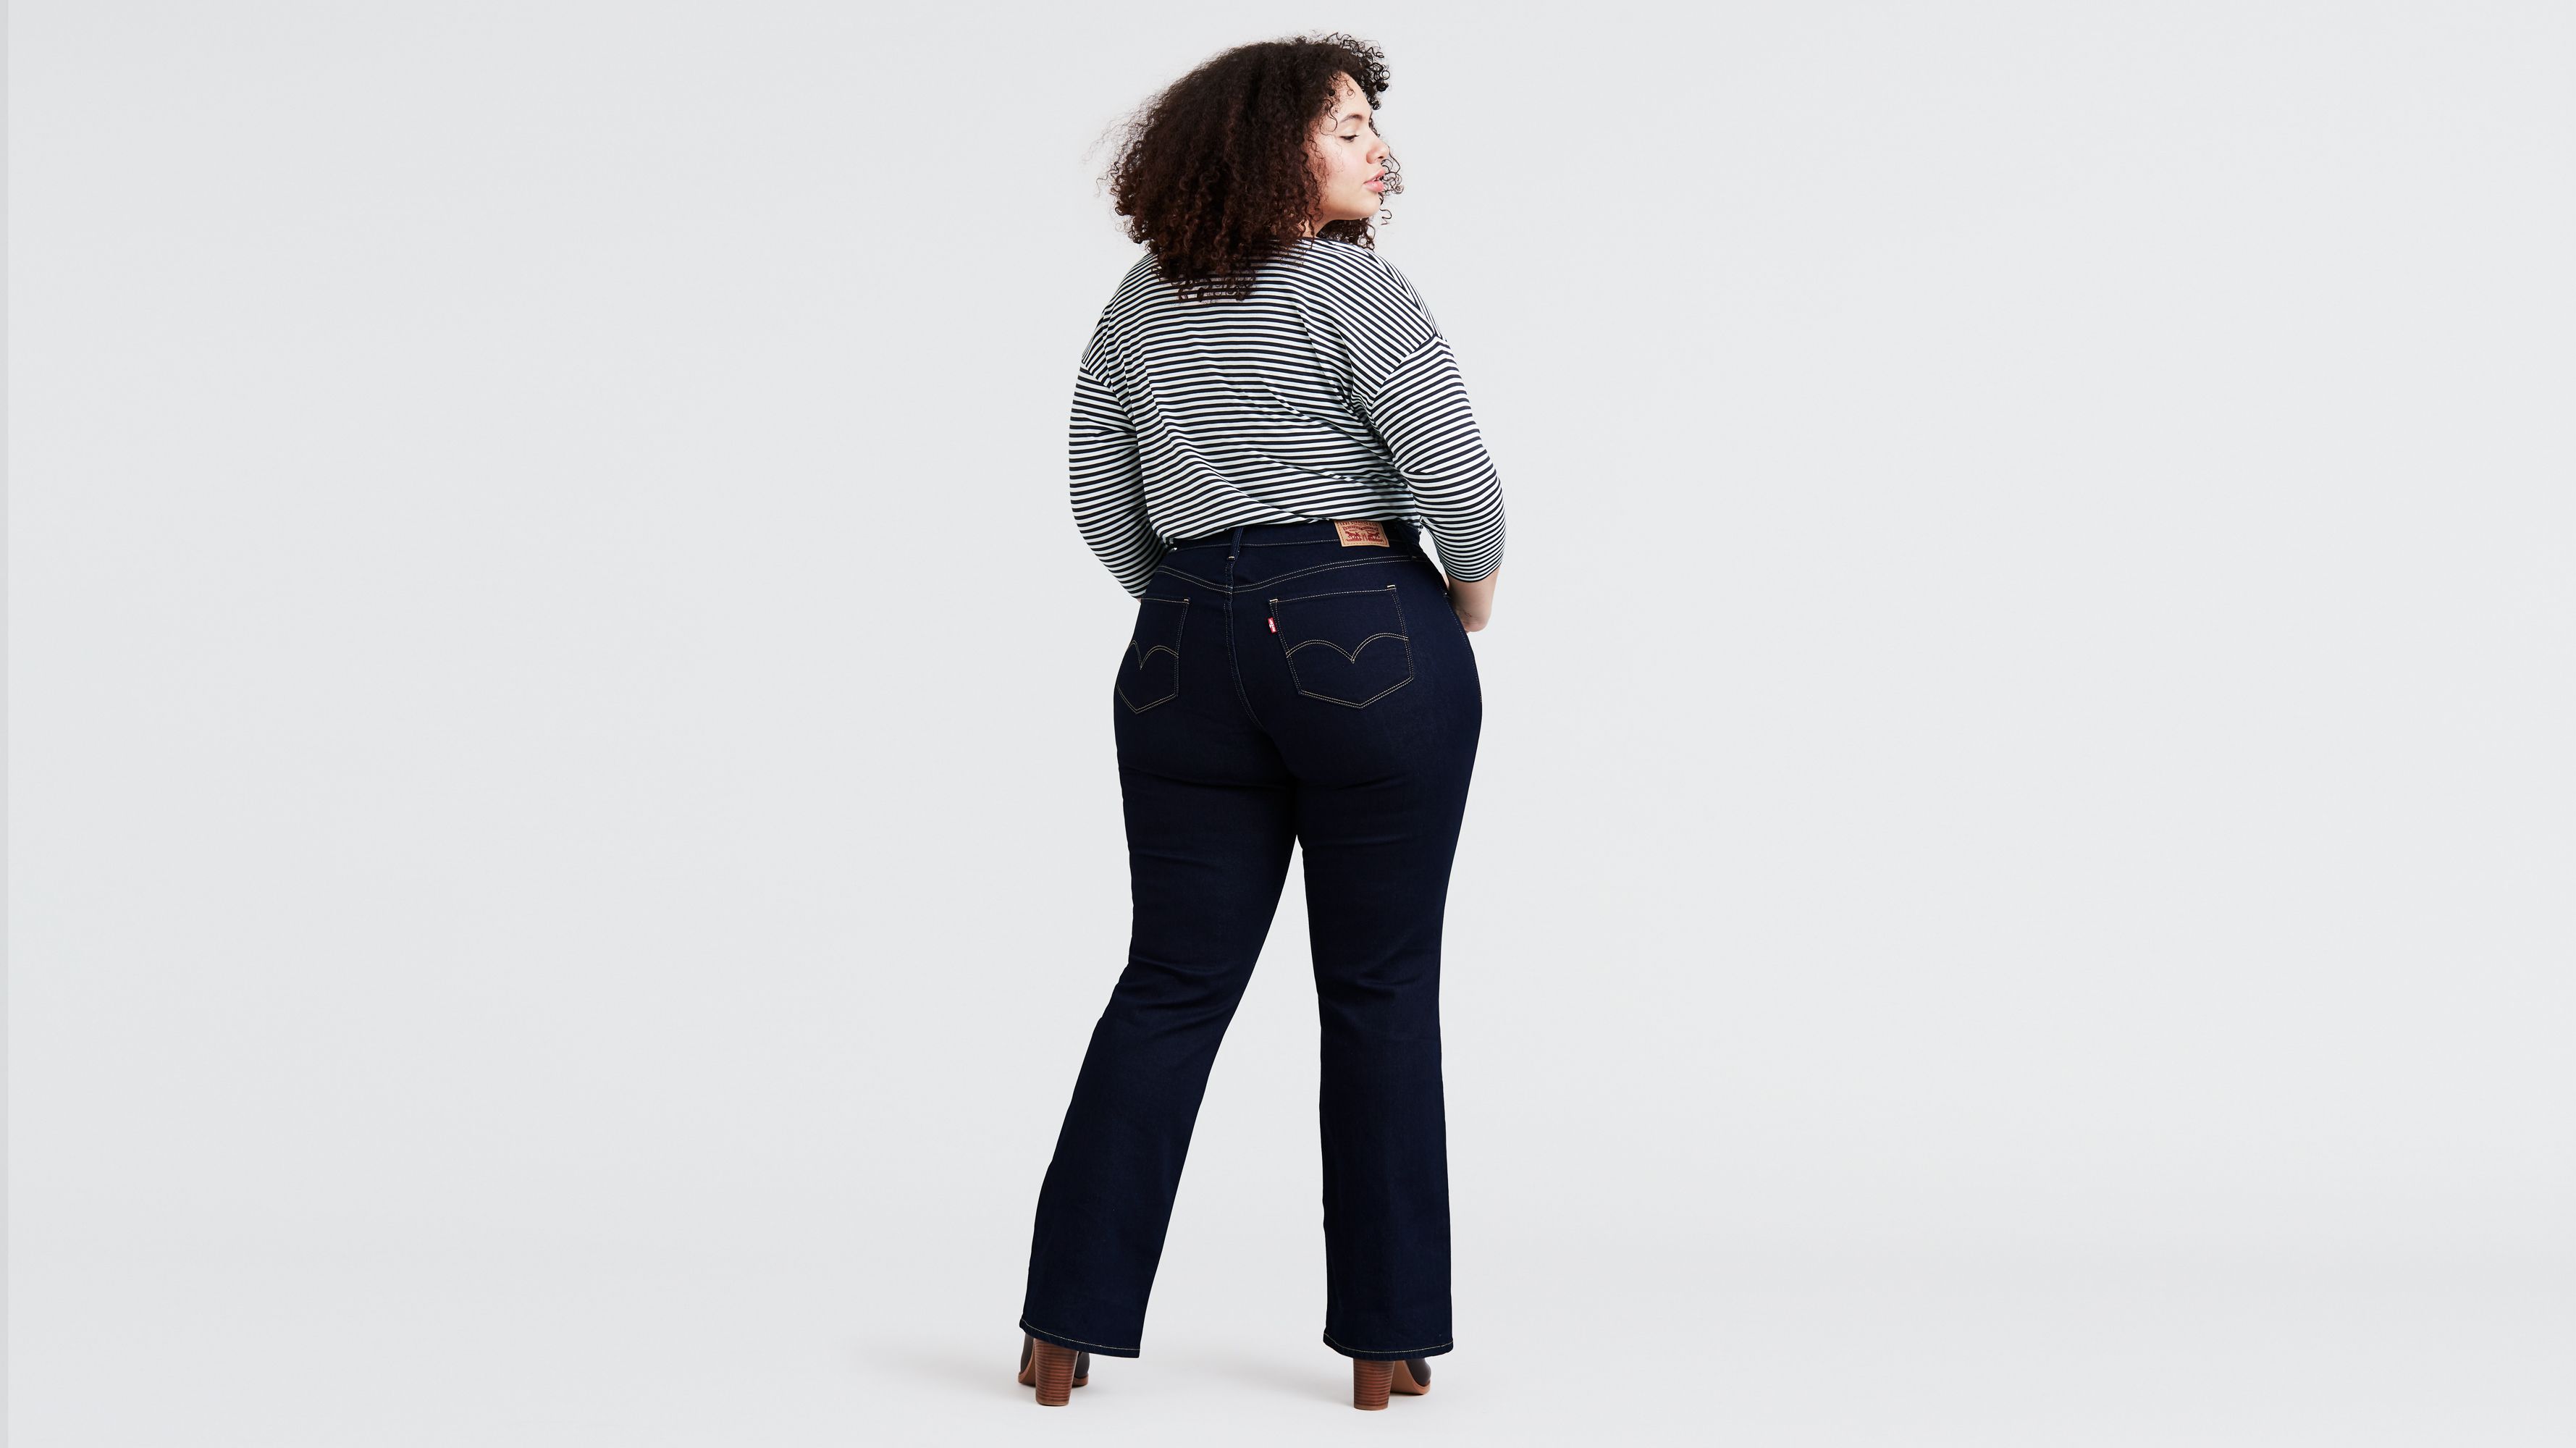 Women's Plus Size Jeans - Shop For Jeans